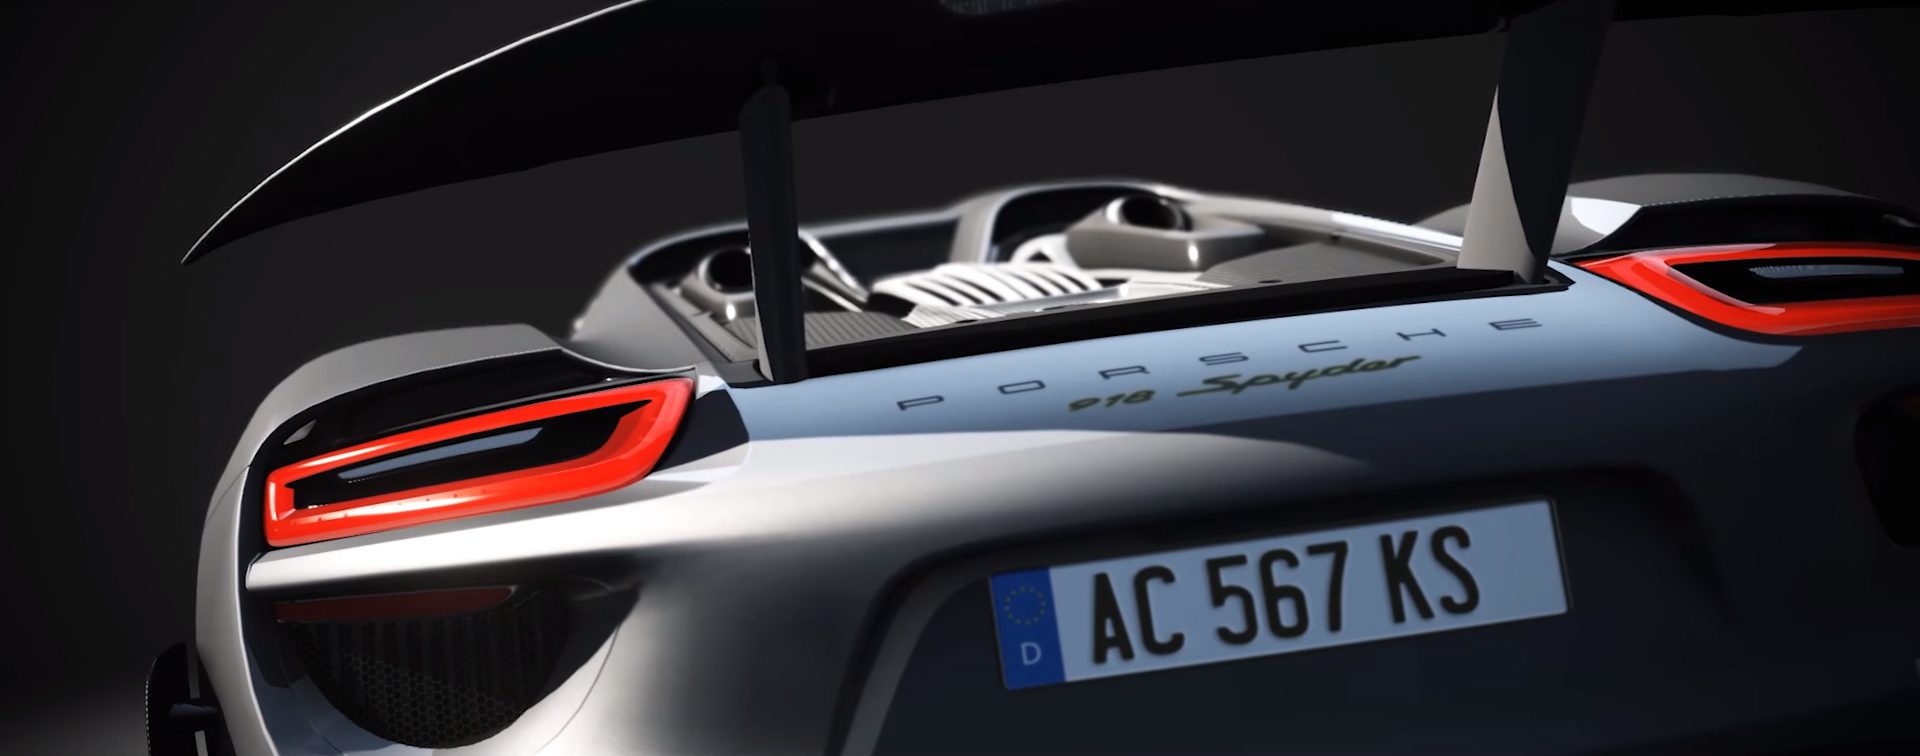 Assetto-Corsa-Porsche-Pack-Vol-1-918-Spyder_5.jpg